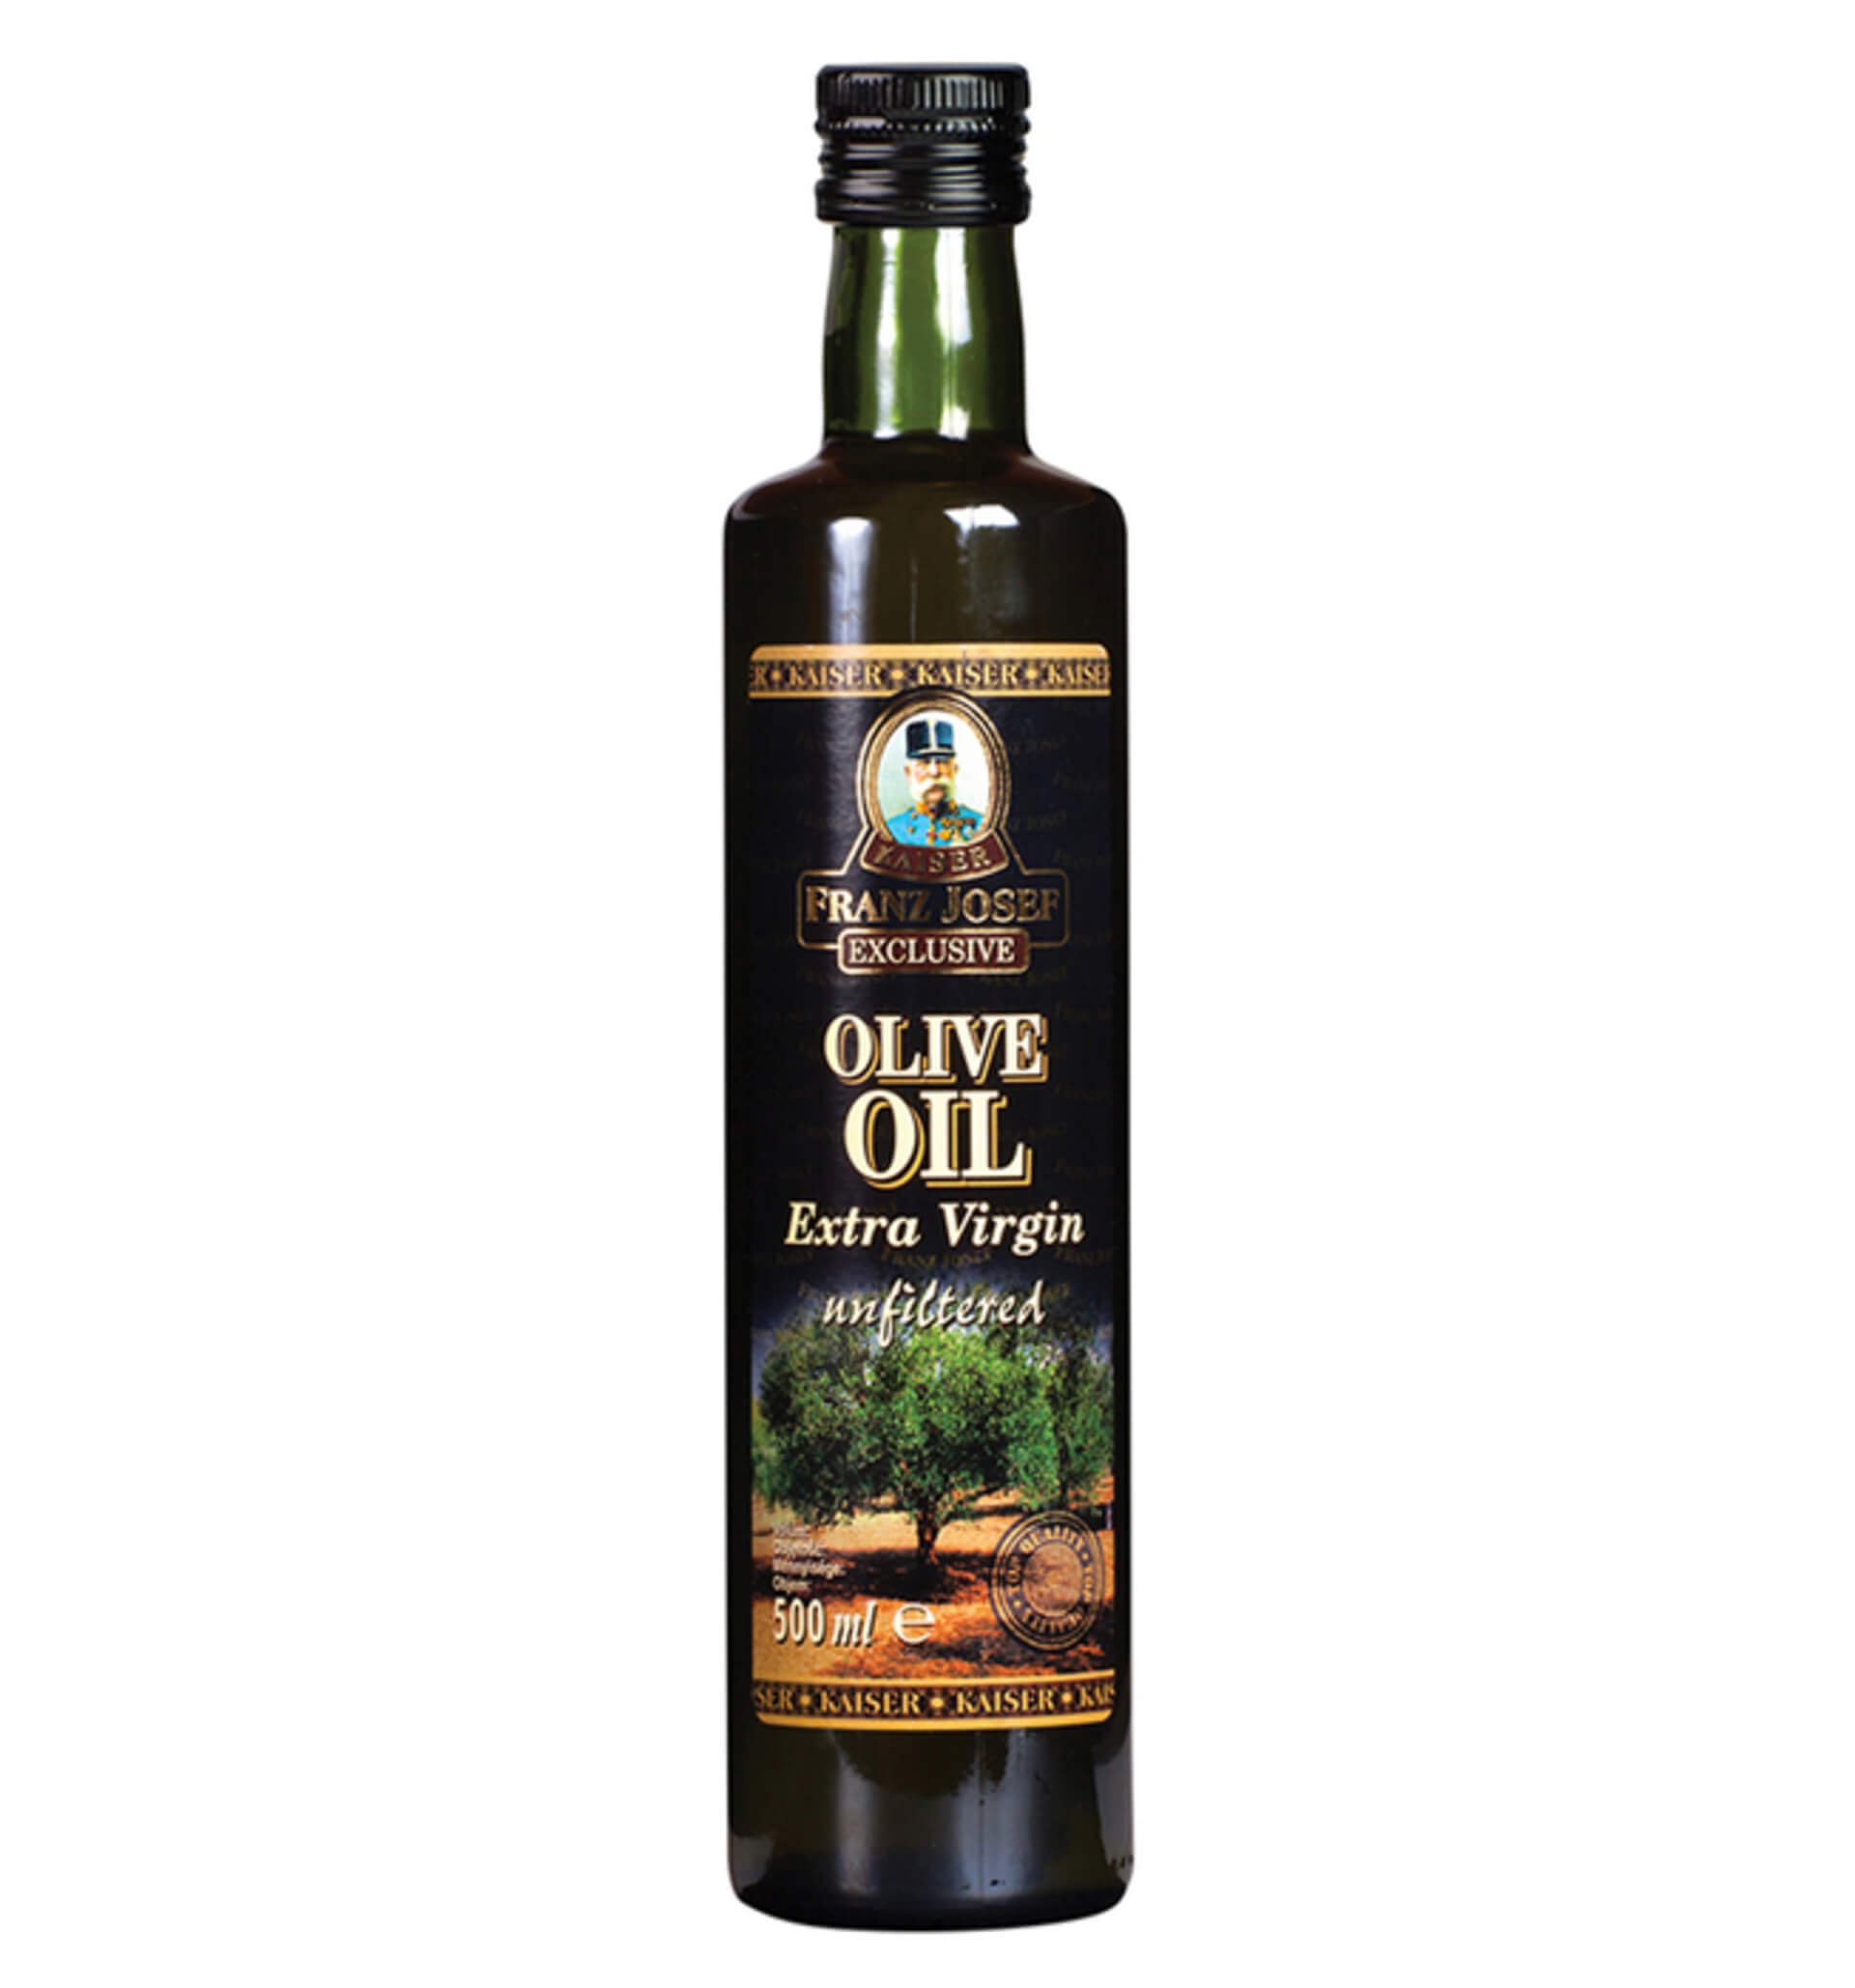 Franz Josef Kaiser Olivový olej extra panenský nefiltrovaný 500 ml  expirace